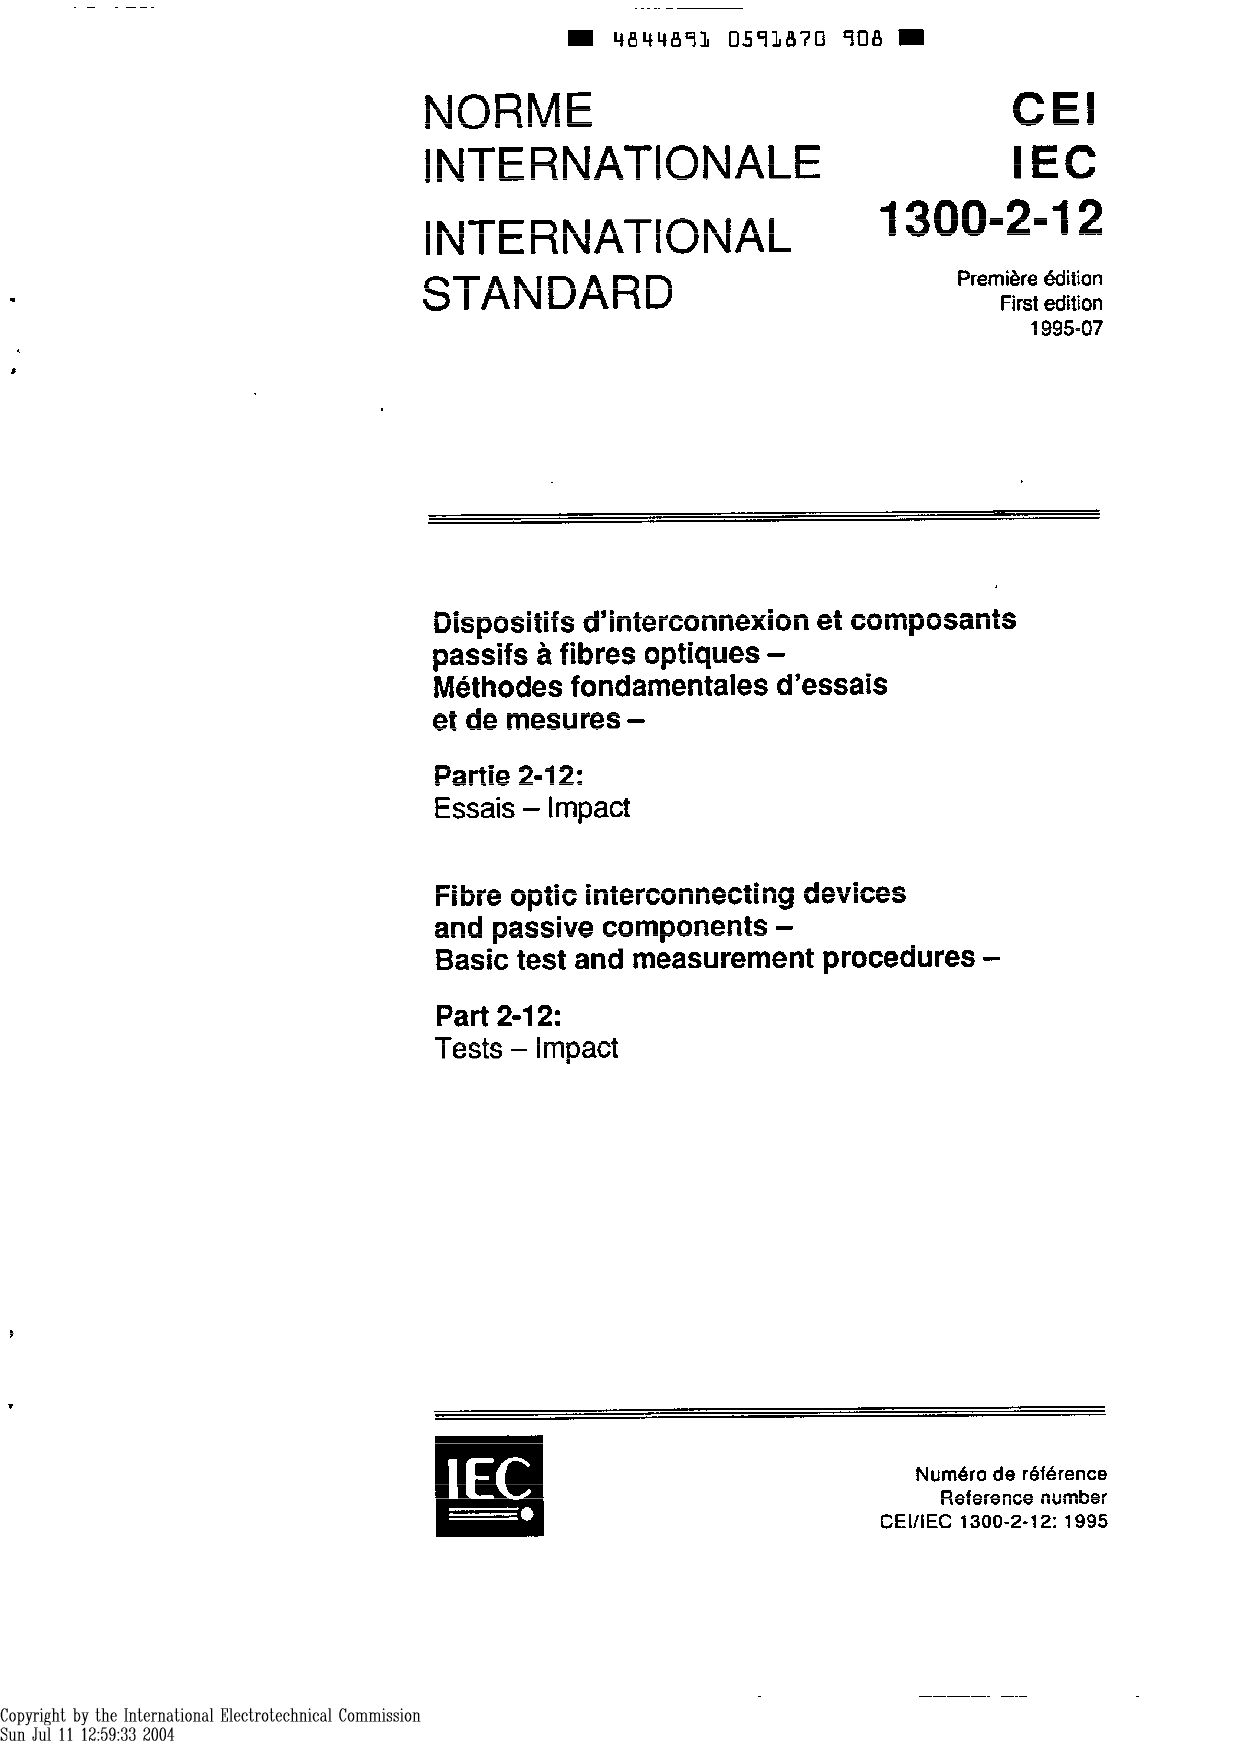 IEC 61300-2-12-1995